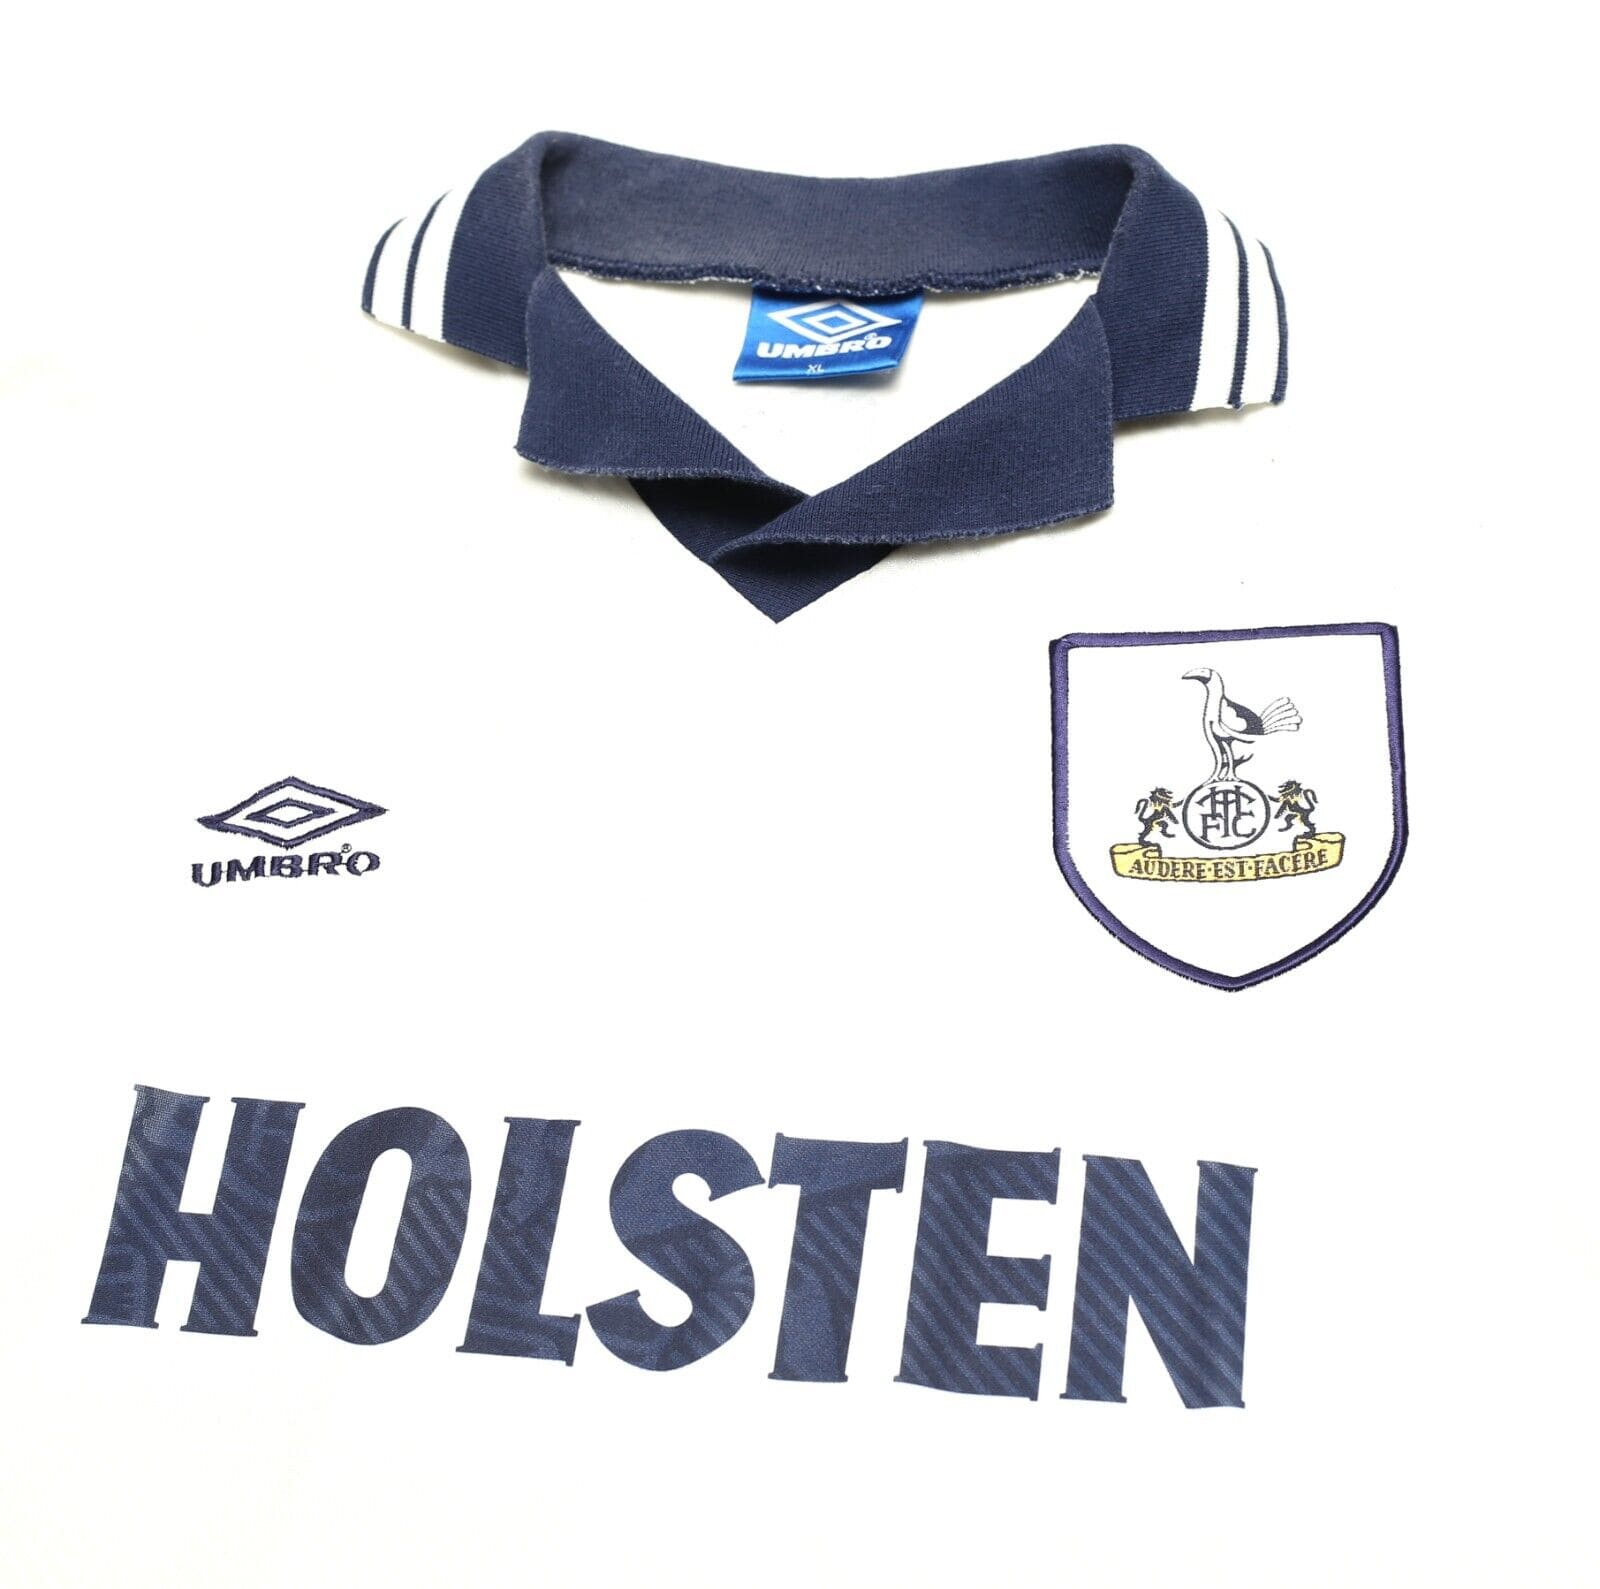 Tottenham Hotspur 1994-95 Away Kit